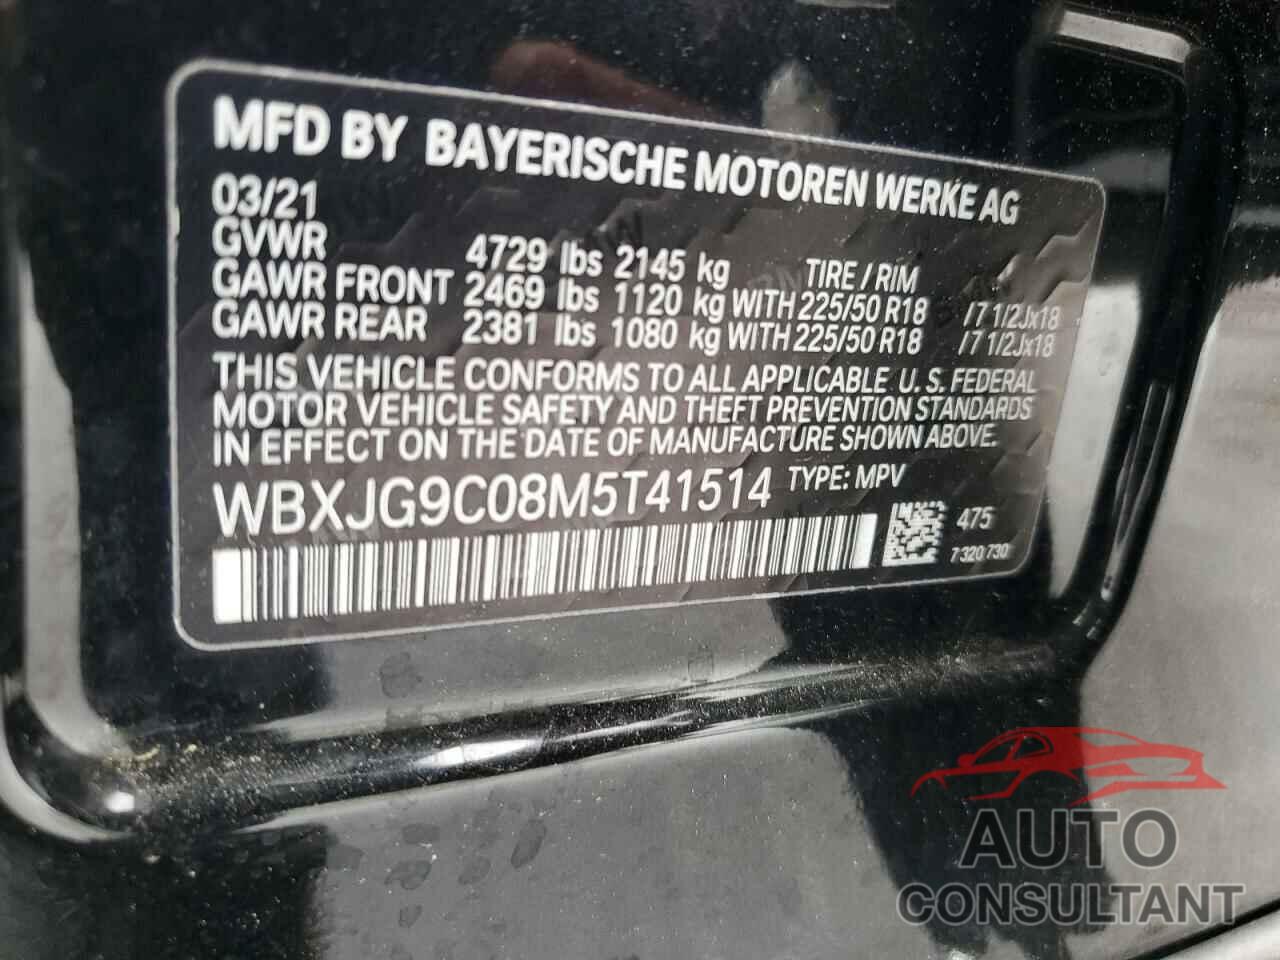 BMW X1 2021 - WBXJG9C08M5T41514